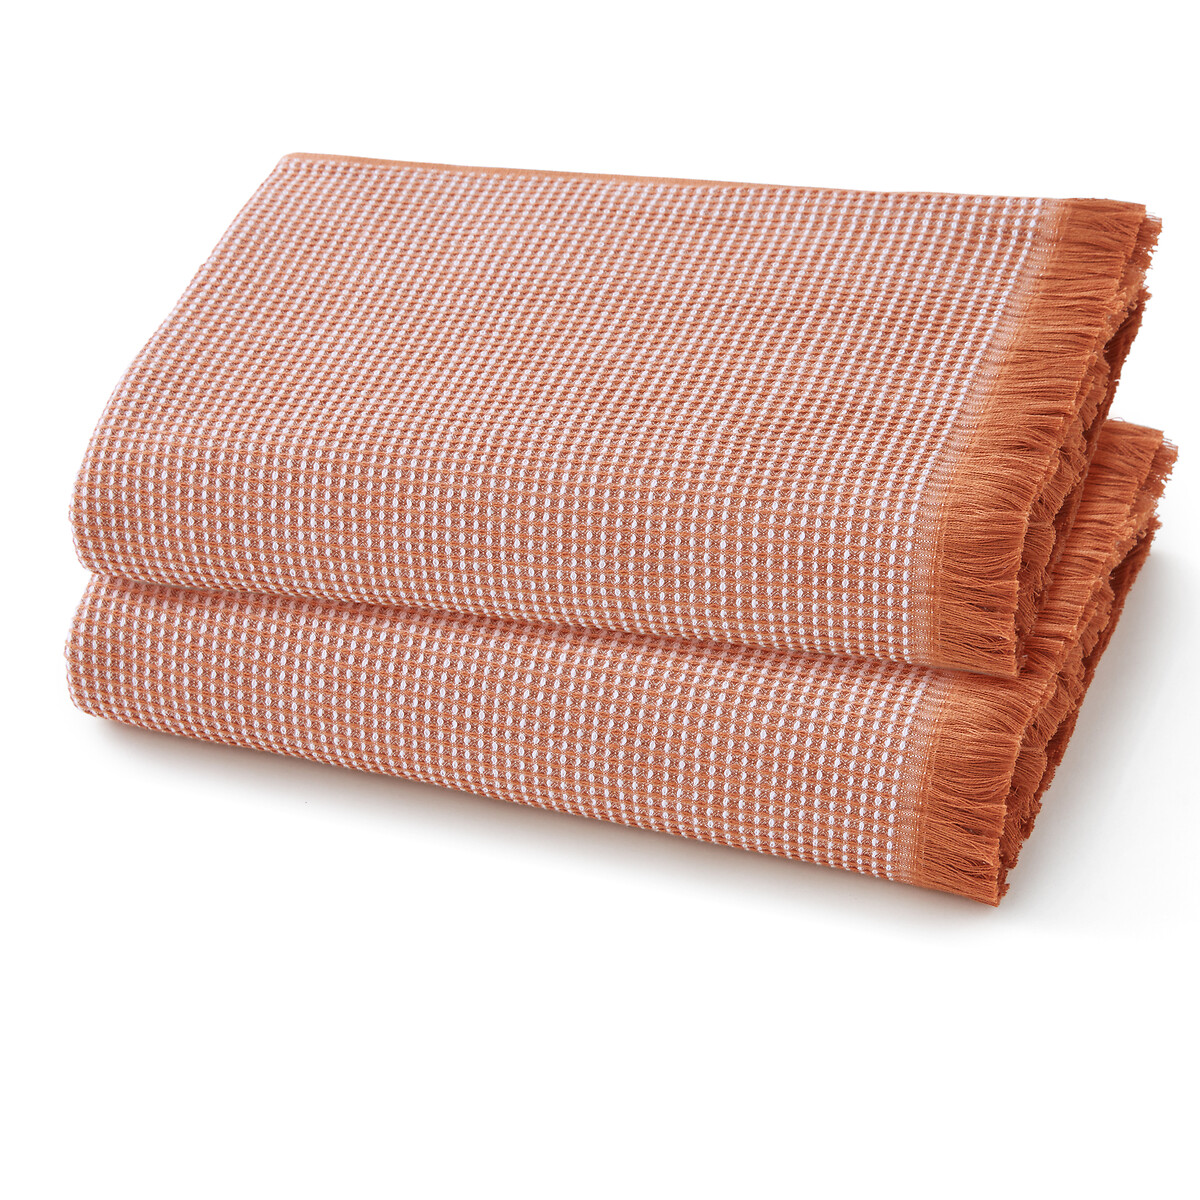 Комплект из 2 полотенец из Вафельной ткани 380г Jalapa 50 x 100 см каштановый